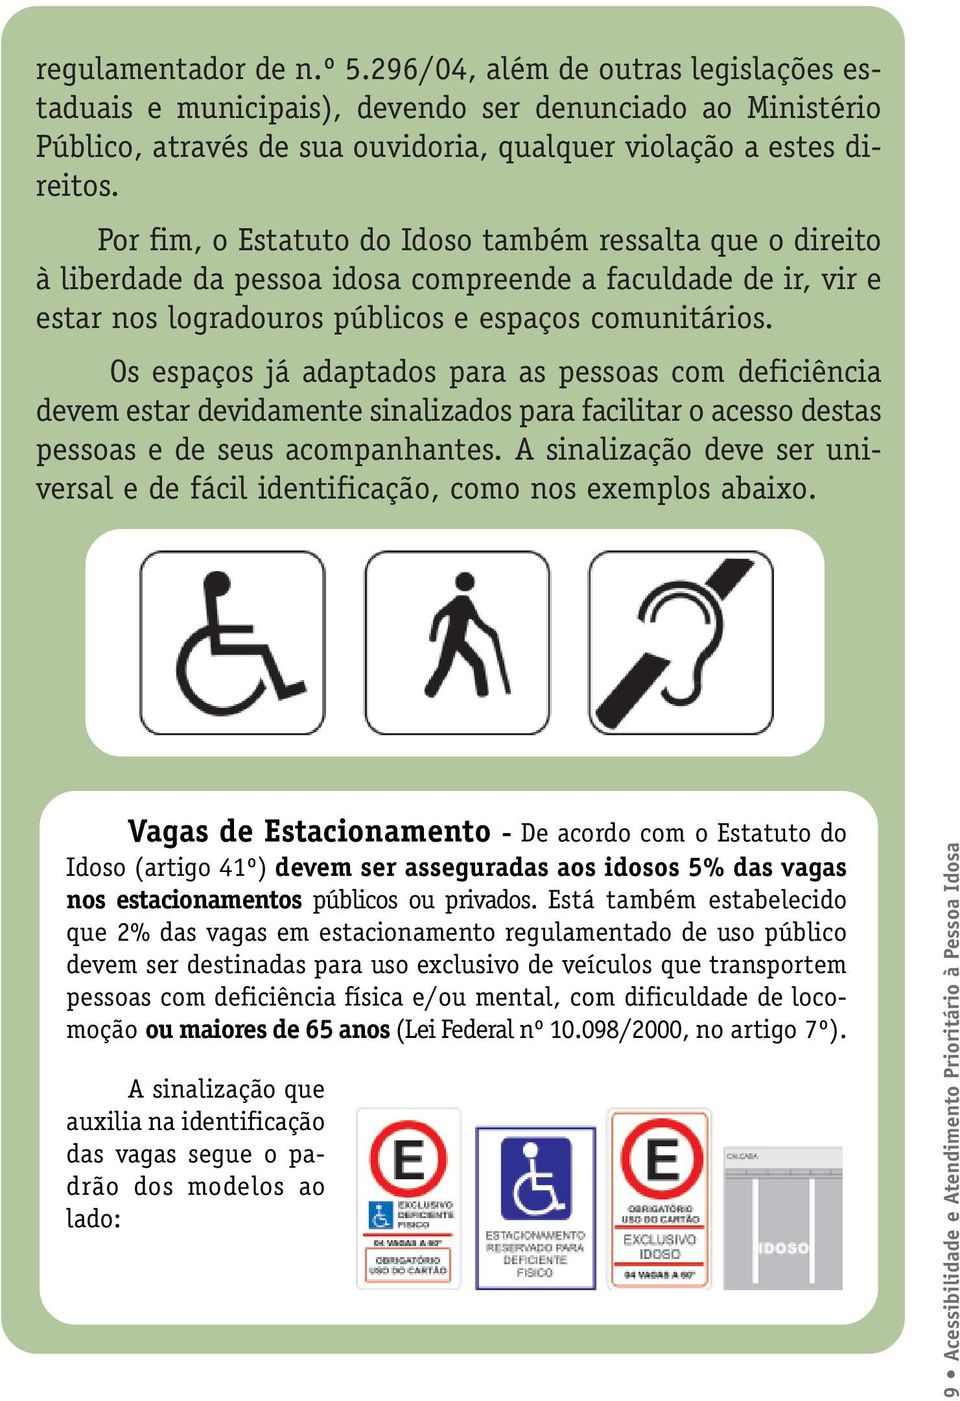 Os espaços já adaptados para as pessoas com deficiência devem estar devidamente sinalizados para facilitar o acesso destas pessoas e de seus acompanhantes.